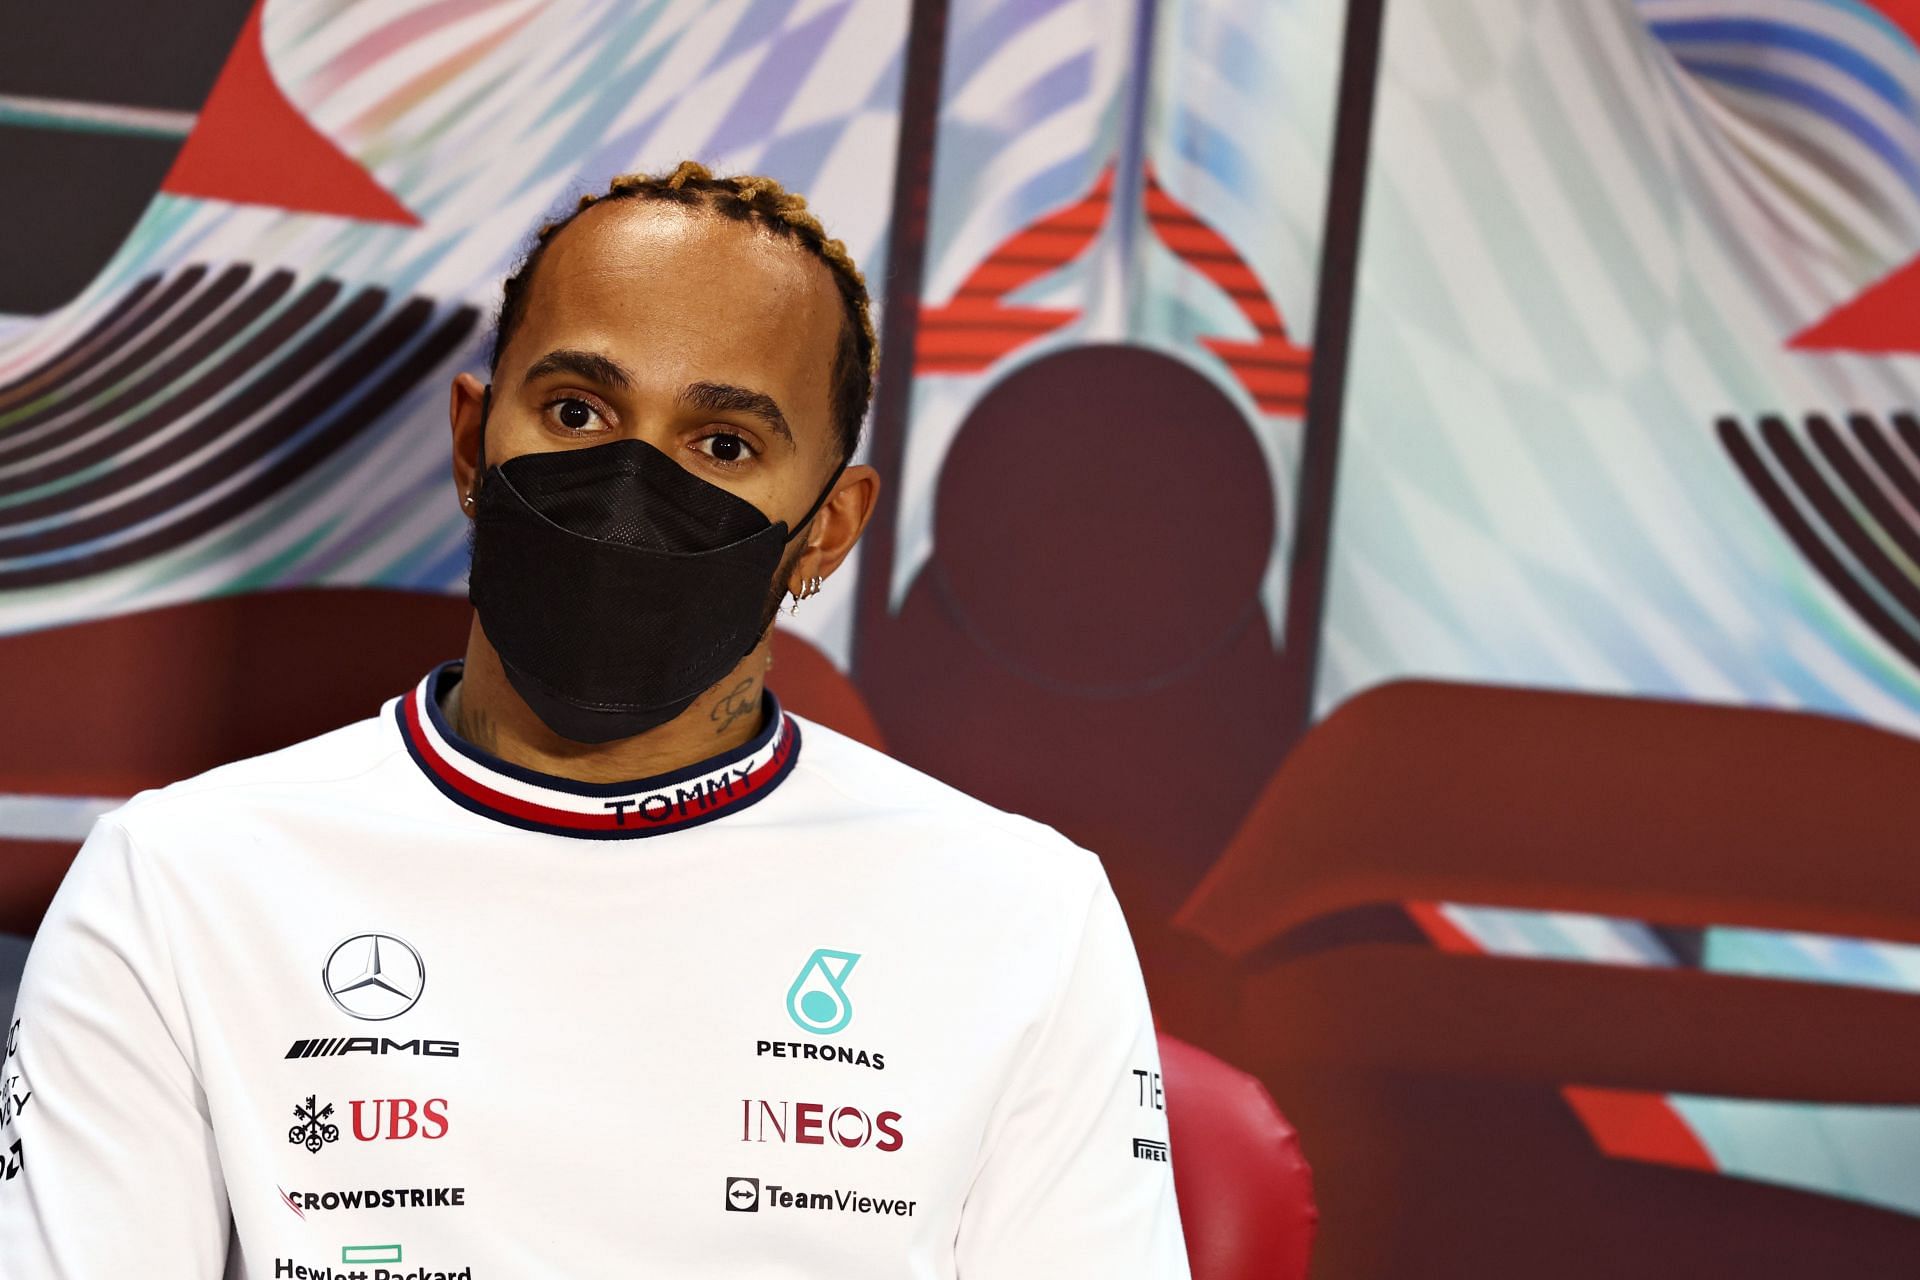 Lewis Hamilton backs Ferrari to win if the Bahrain Grand Prix was today